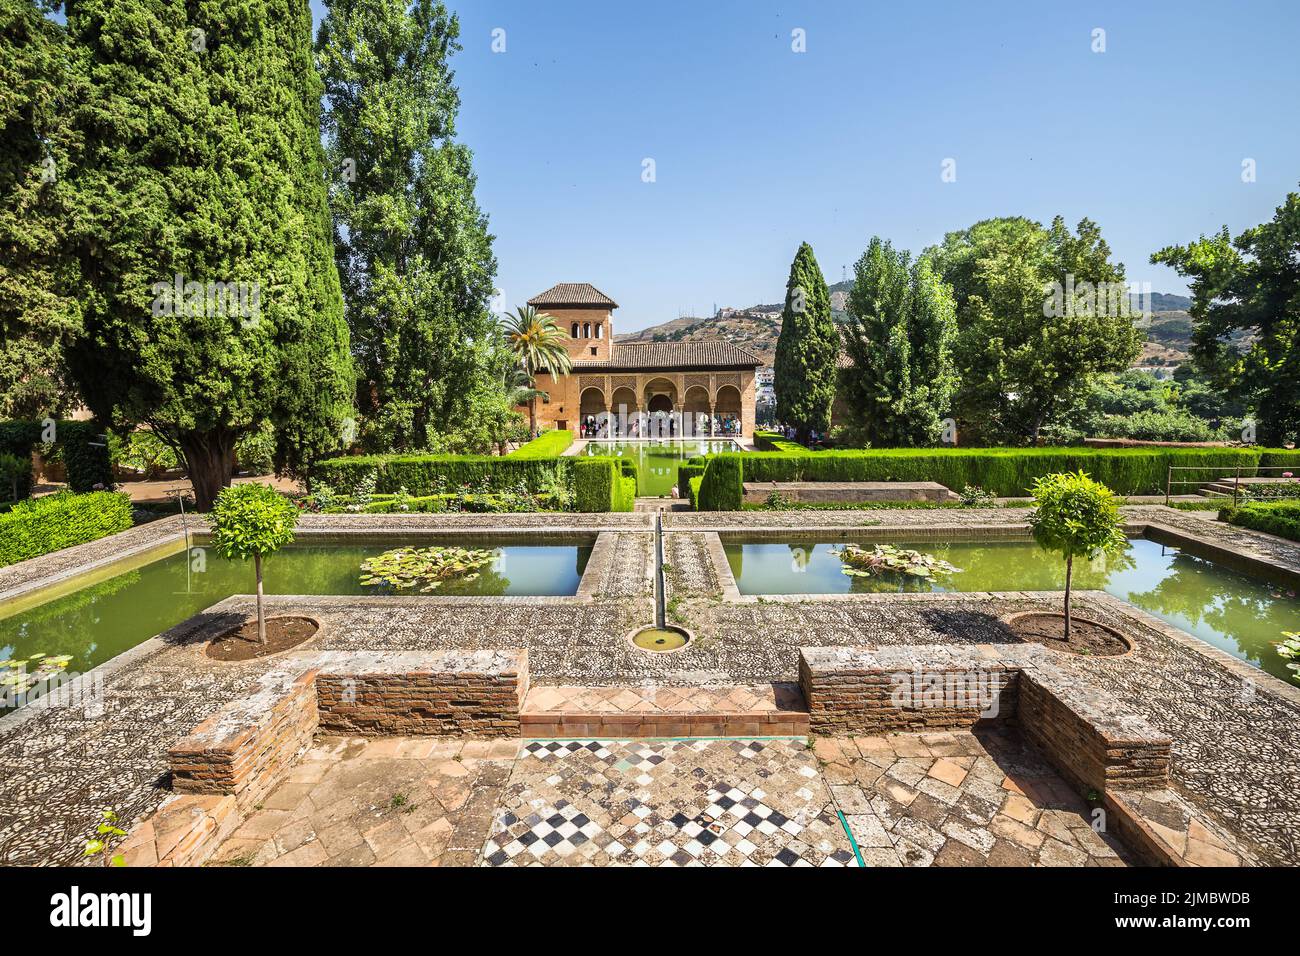 Gardens of La Alhambra in Granada, Spain Stock Photo